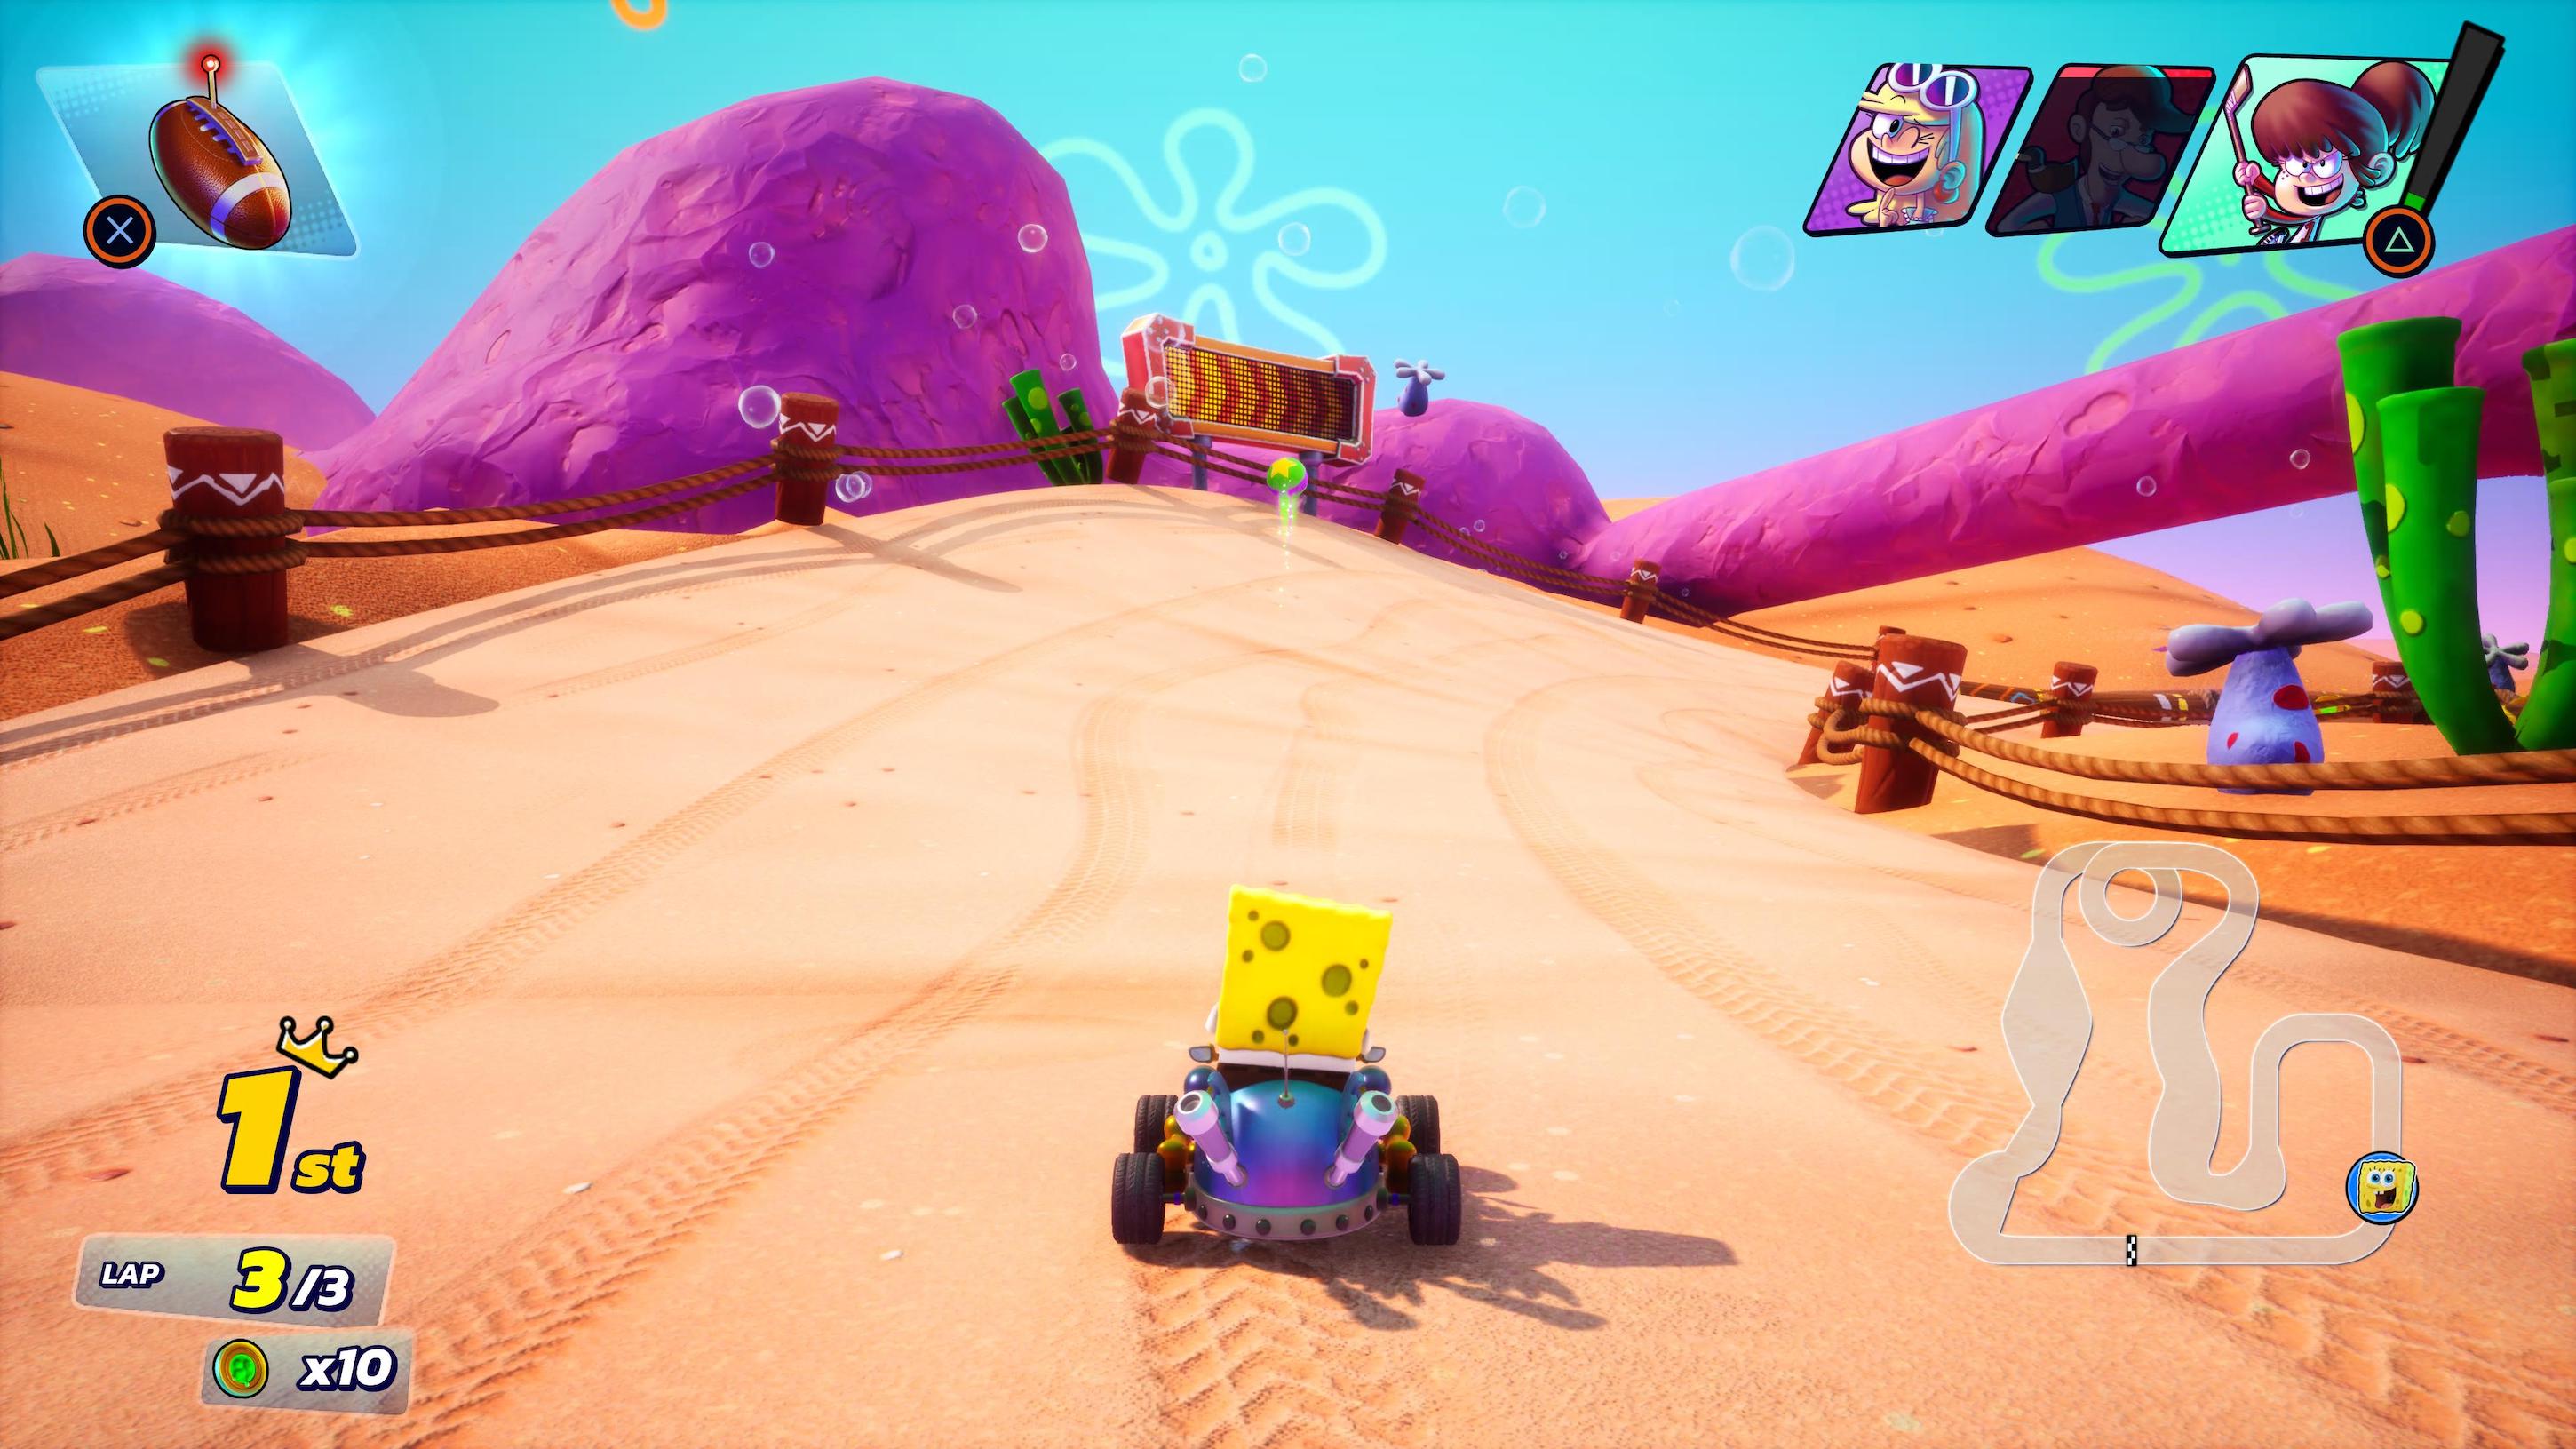 Nickelodeon Kart Racers 3: Slime Speedway Review